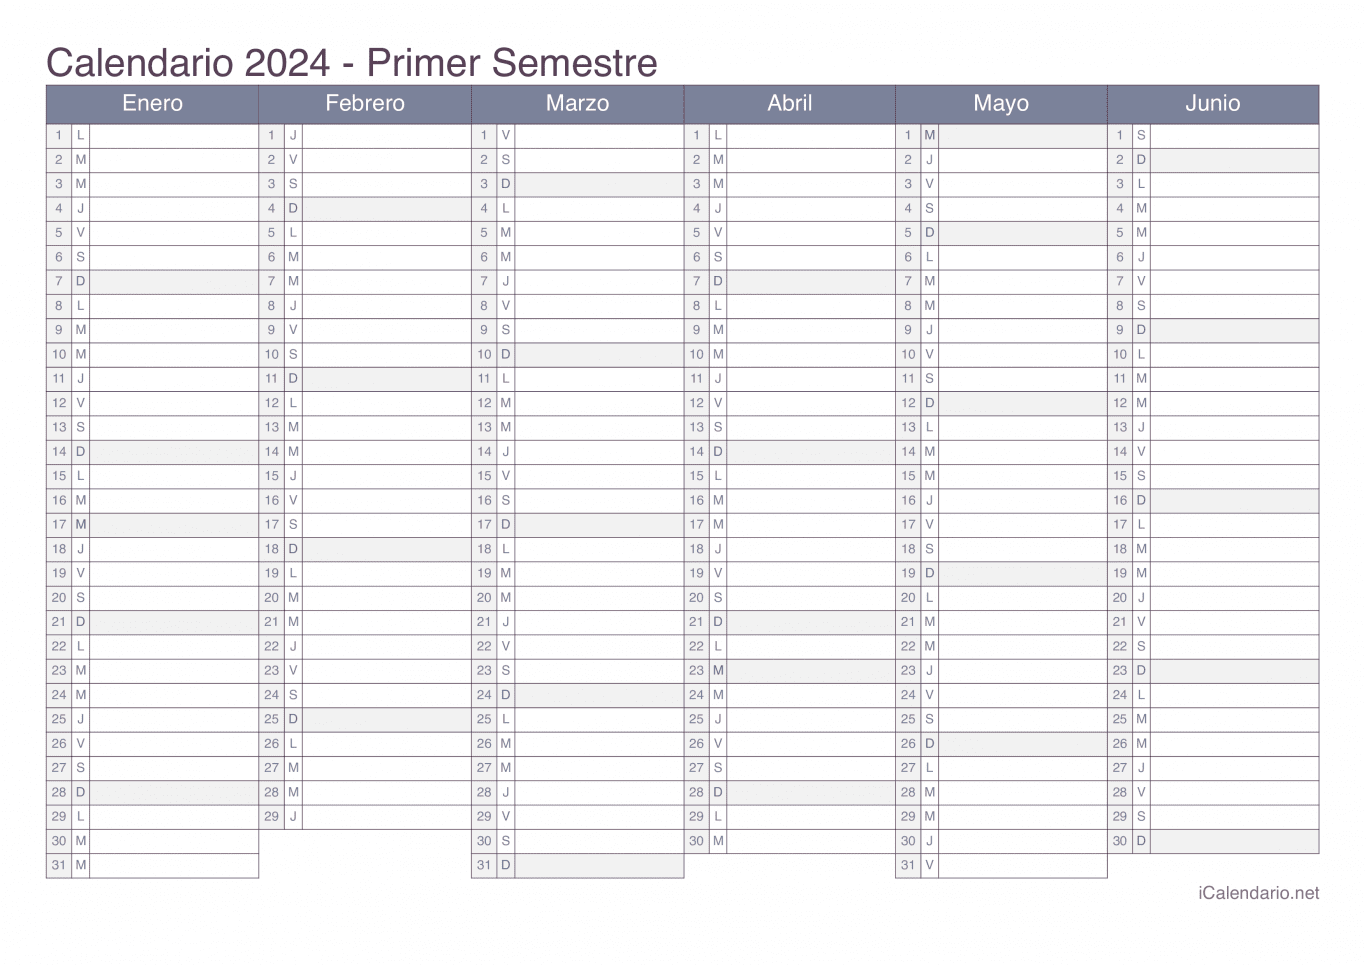 Calendario por semestre 2024 - Office